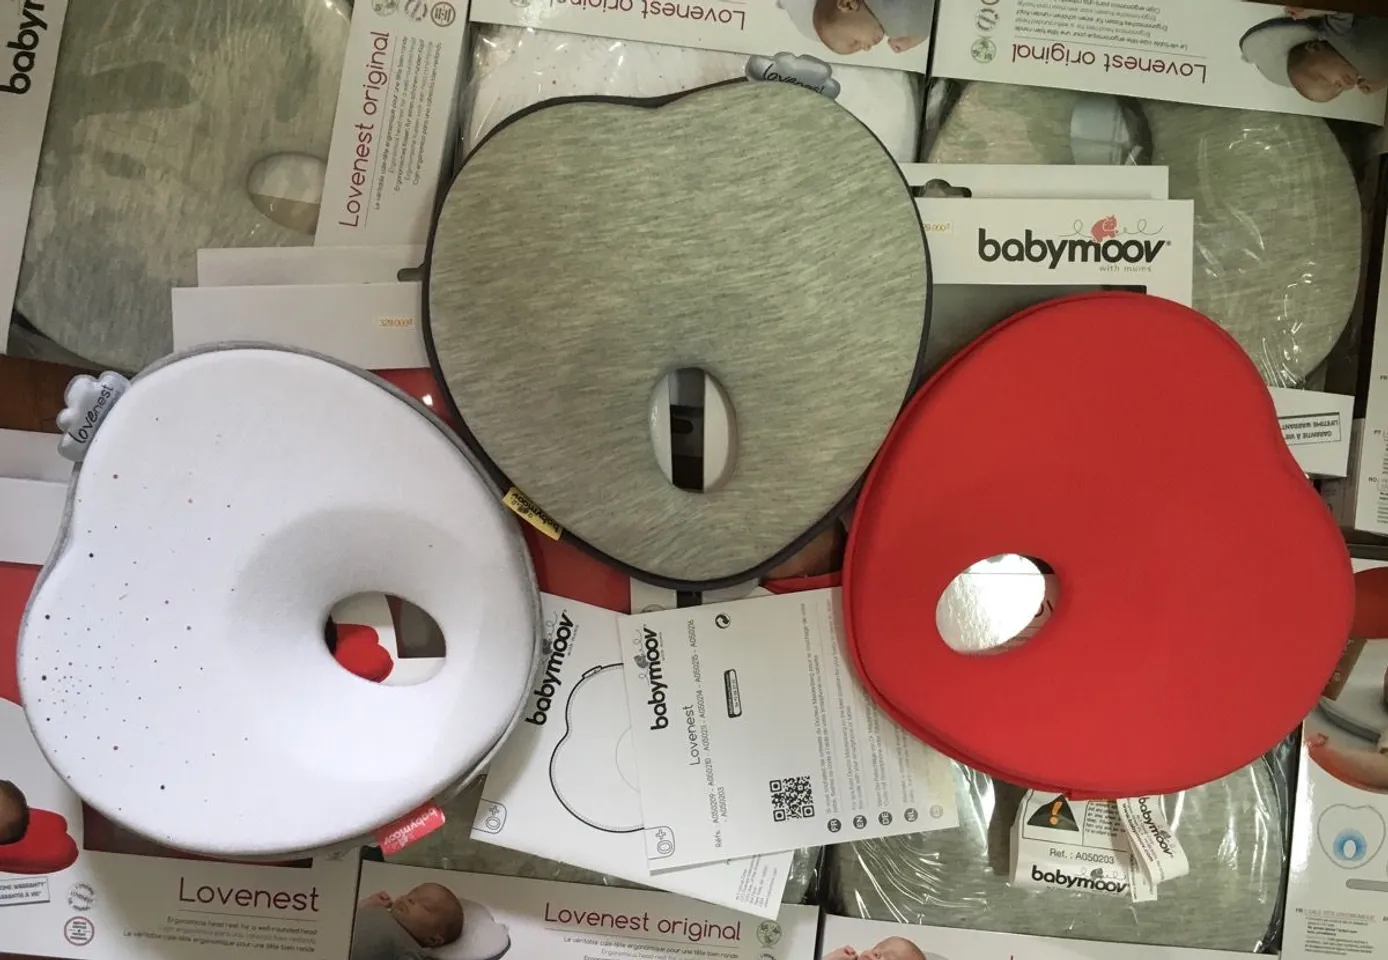 Gối chống bẹp đầu Babymoov hiện có 3 màu là trắng, ghi và đỏ